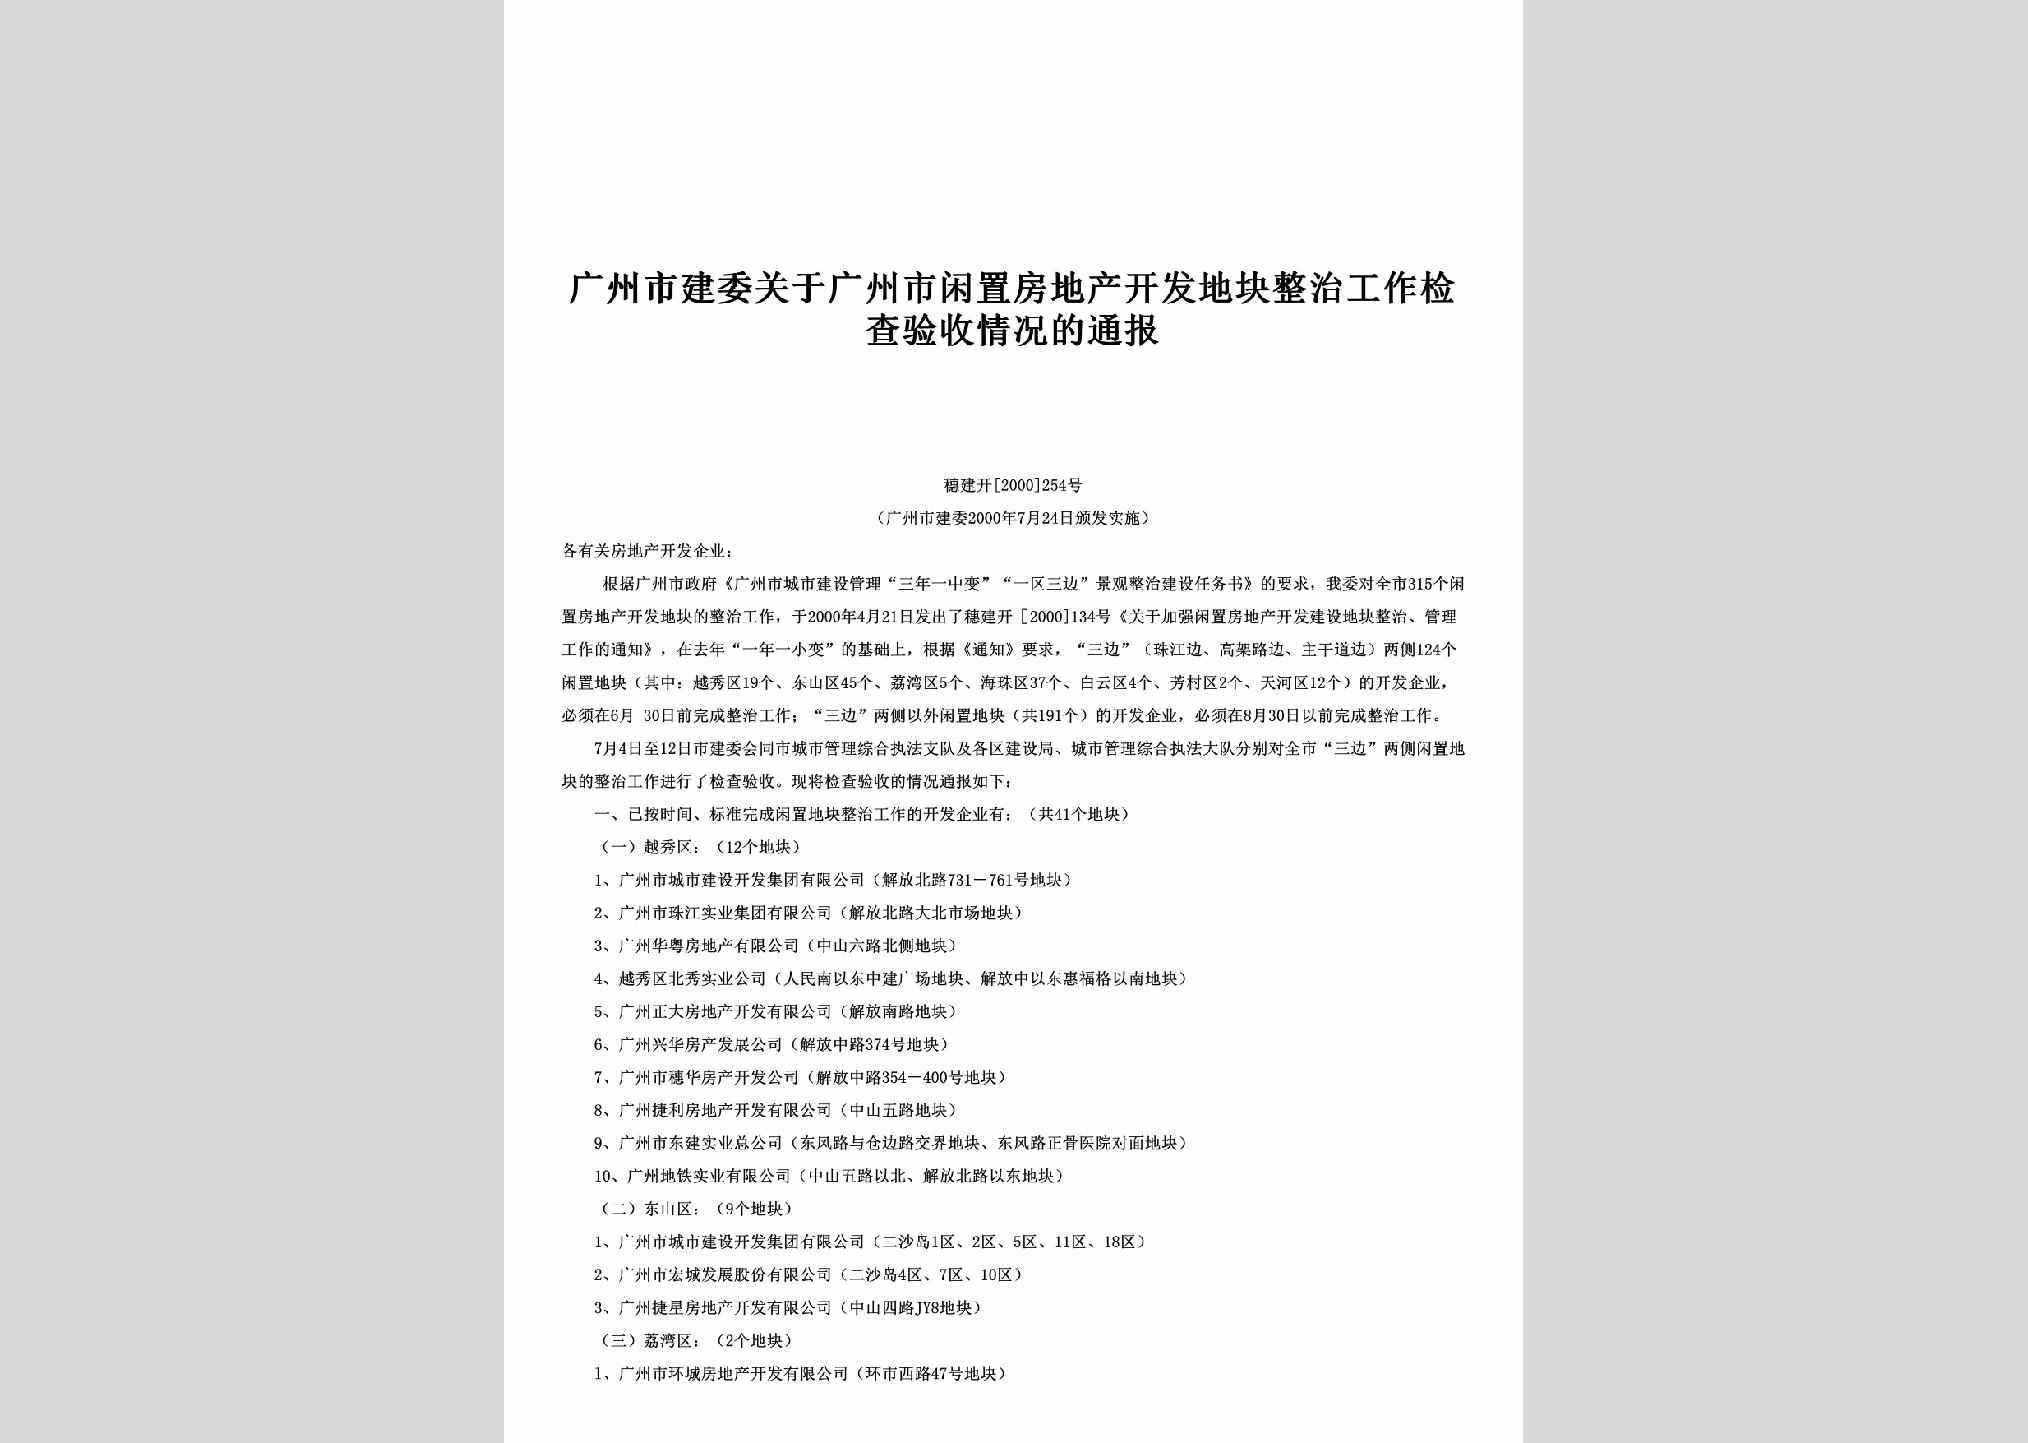 穗建开[2000]254号：关于广州市闲置房地产开发地块整治工作检查验收情况的通报